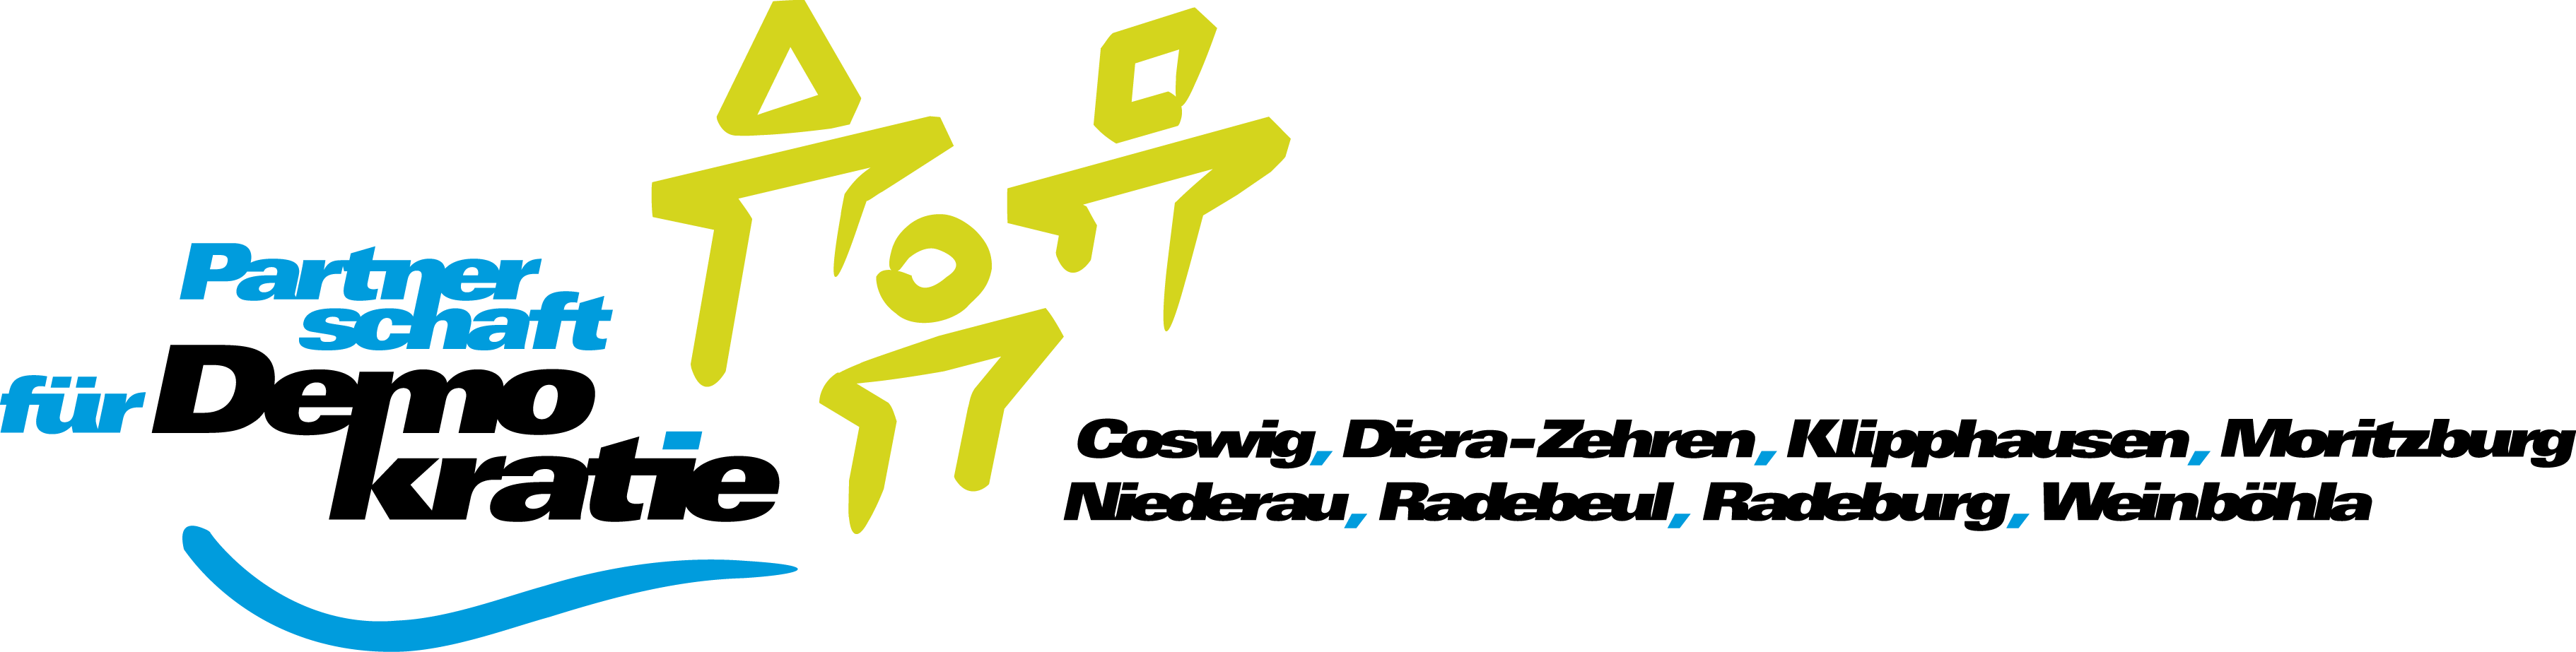 Logo-PfD-kombi-1